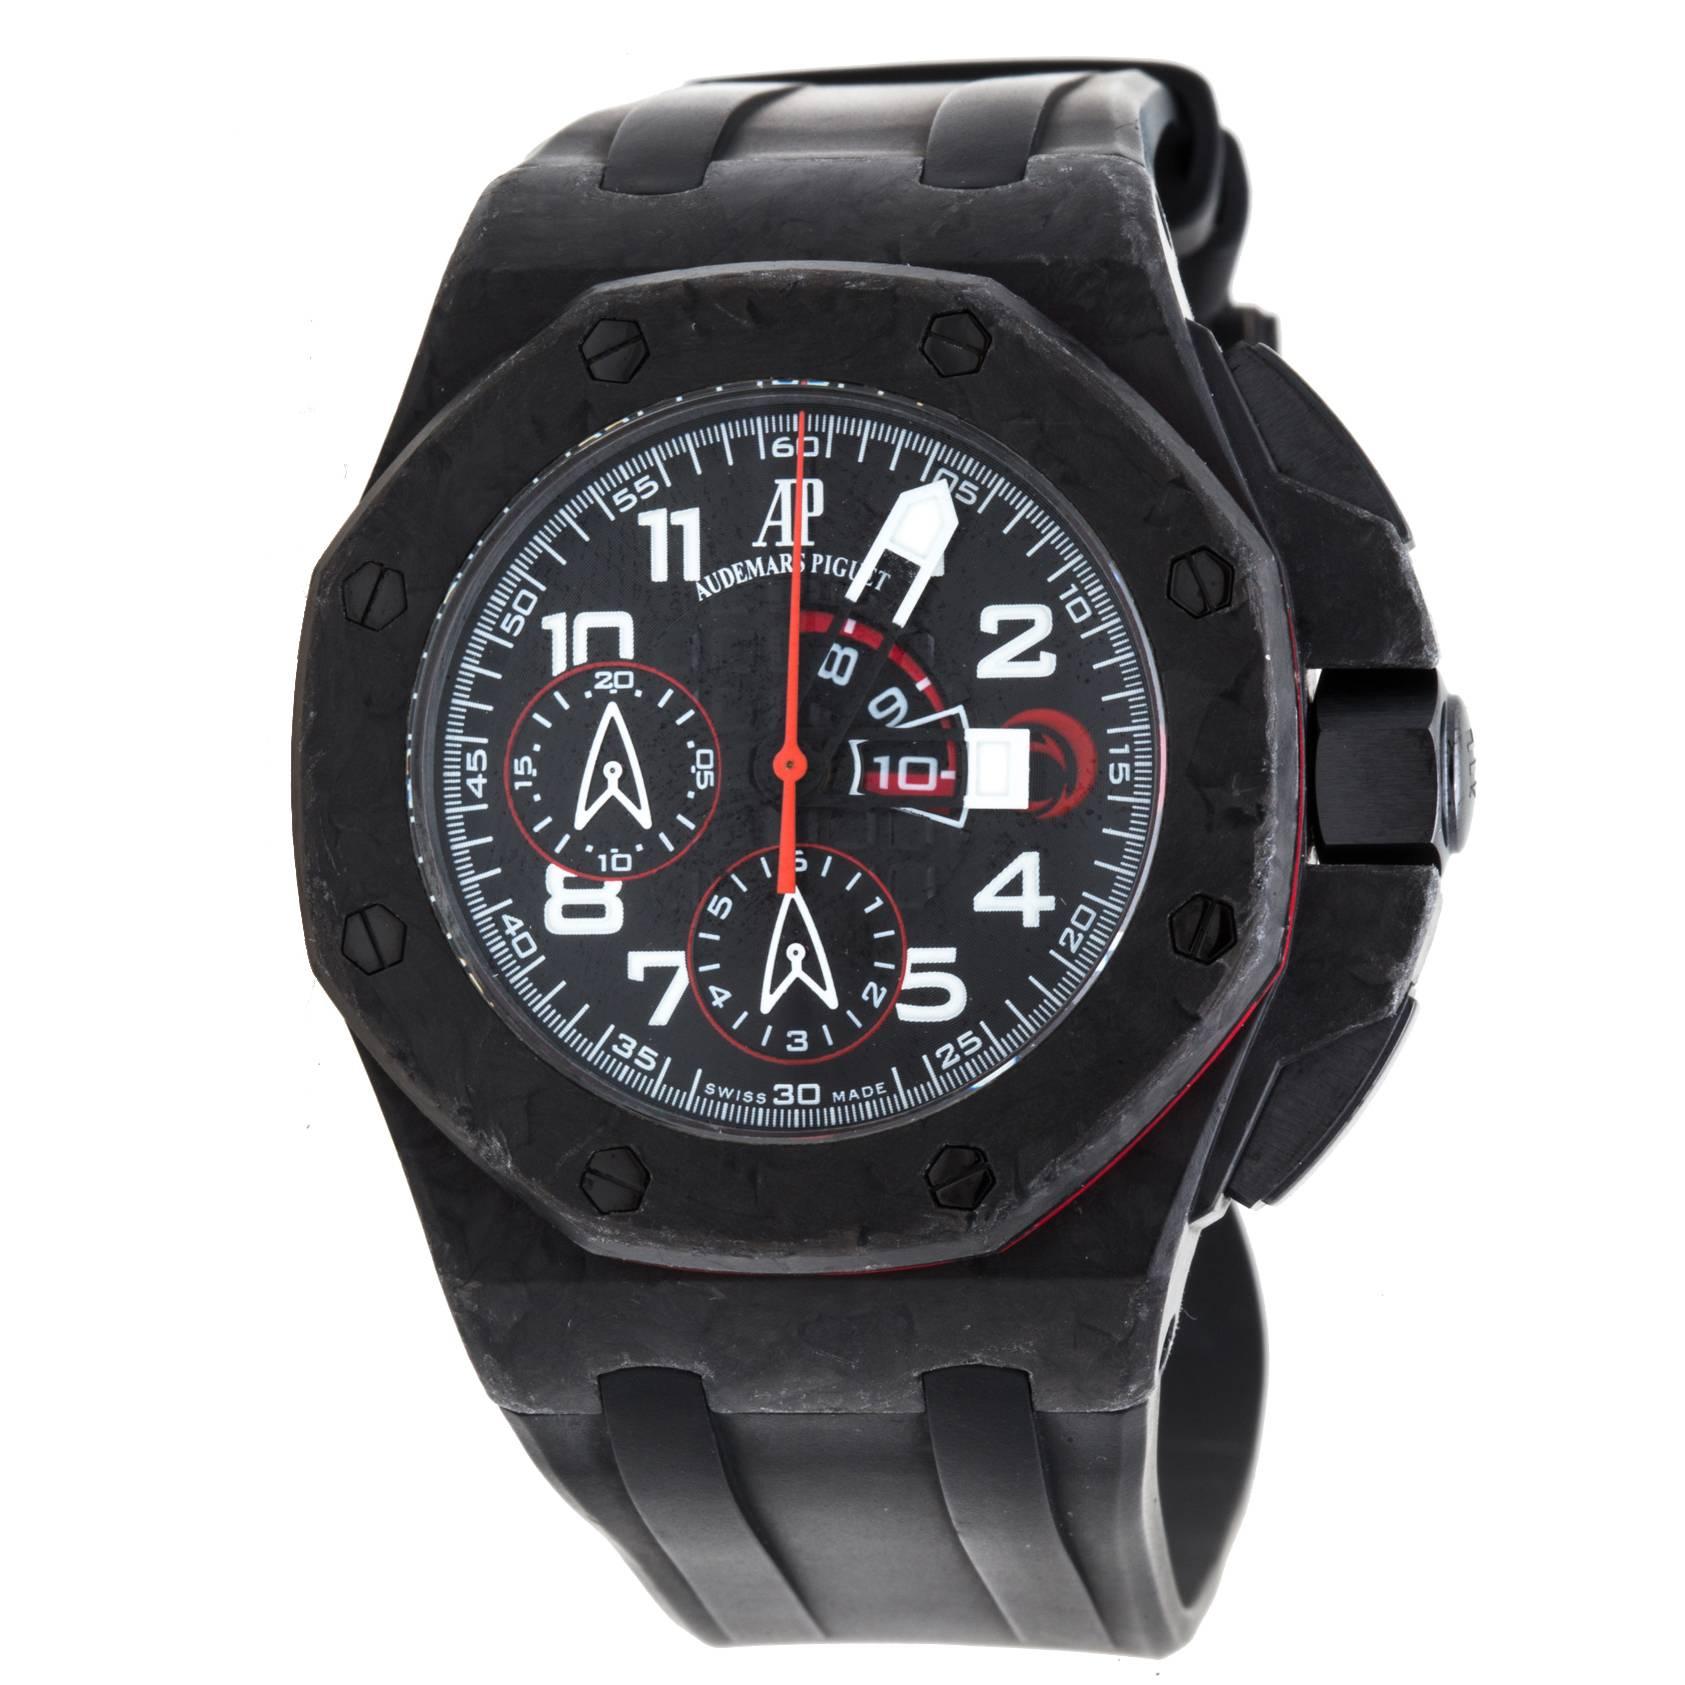 Audemars Piguet Royal Oak Offshore Team Alinghi Limited Edition Wristwatch